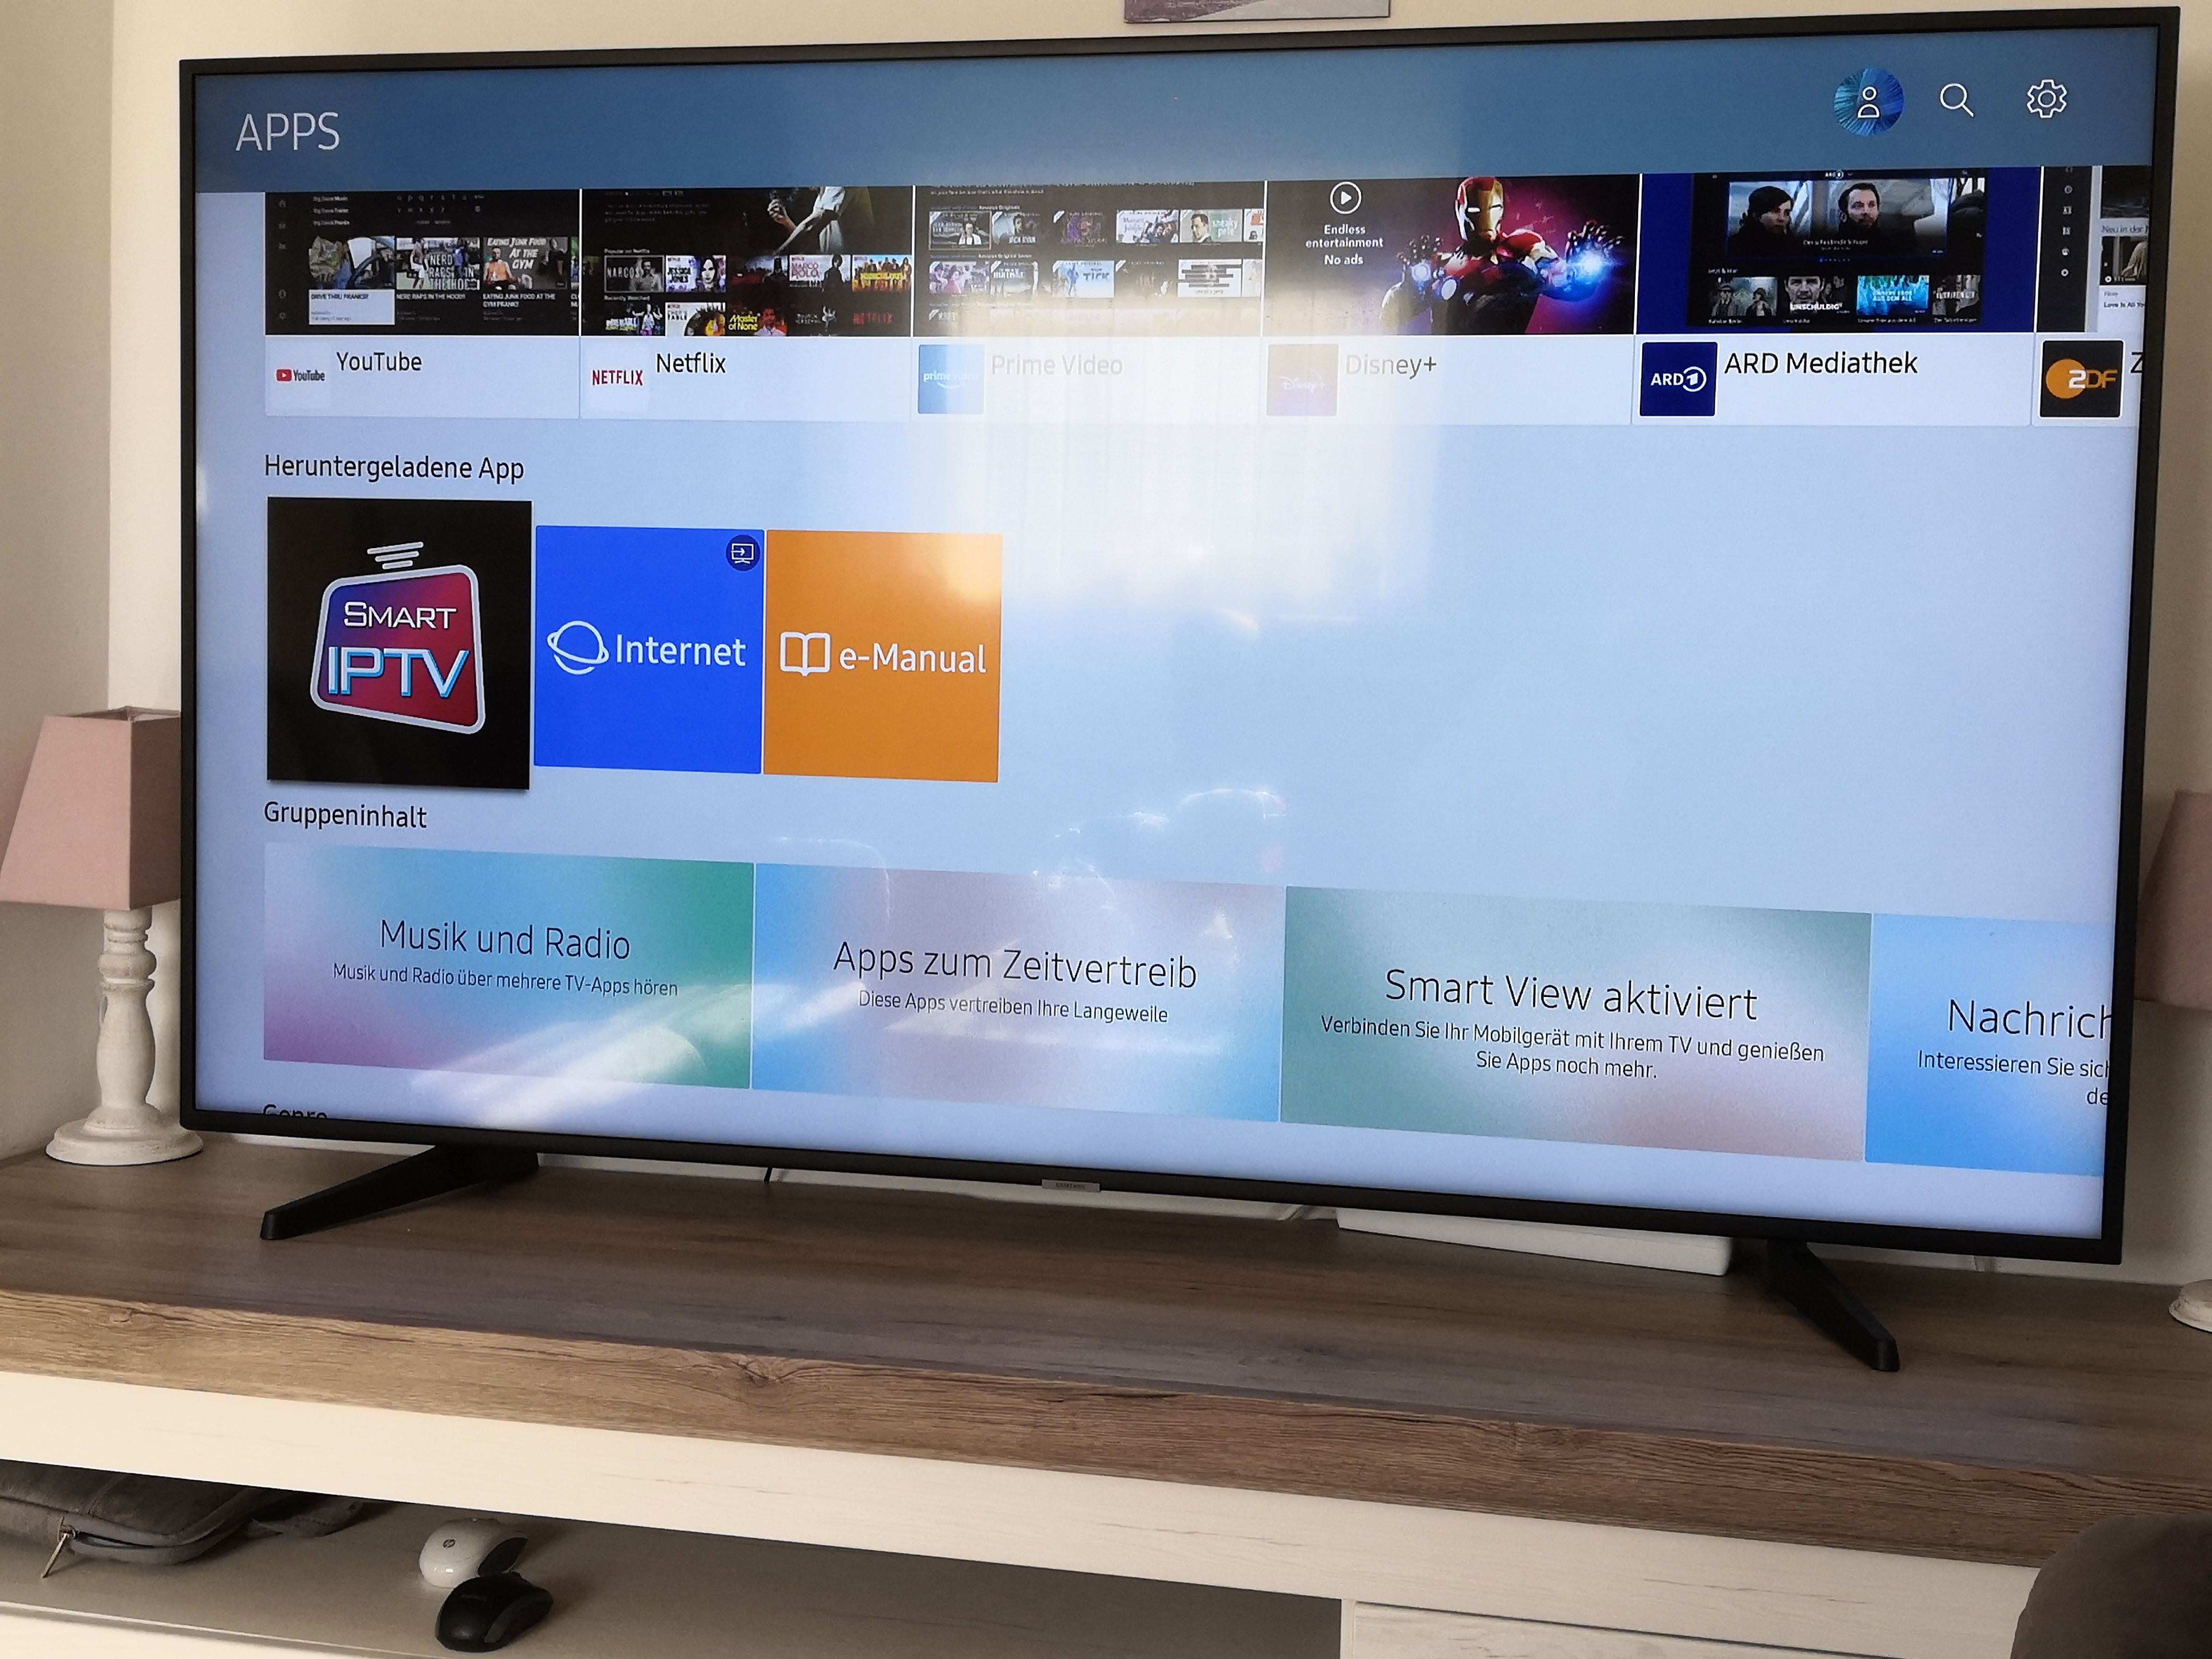 Gelöst: Smart ip TV ist auf neuem Samsung TV nicht verfügbar - Samsung  Community